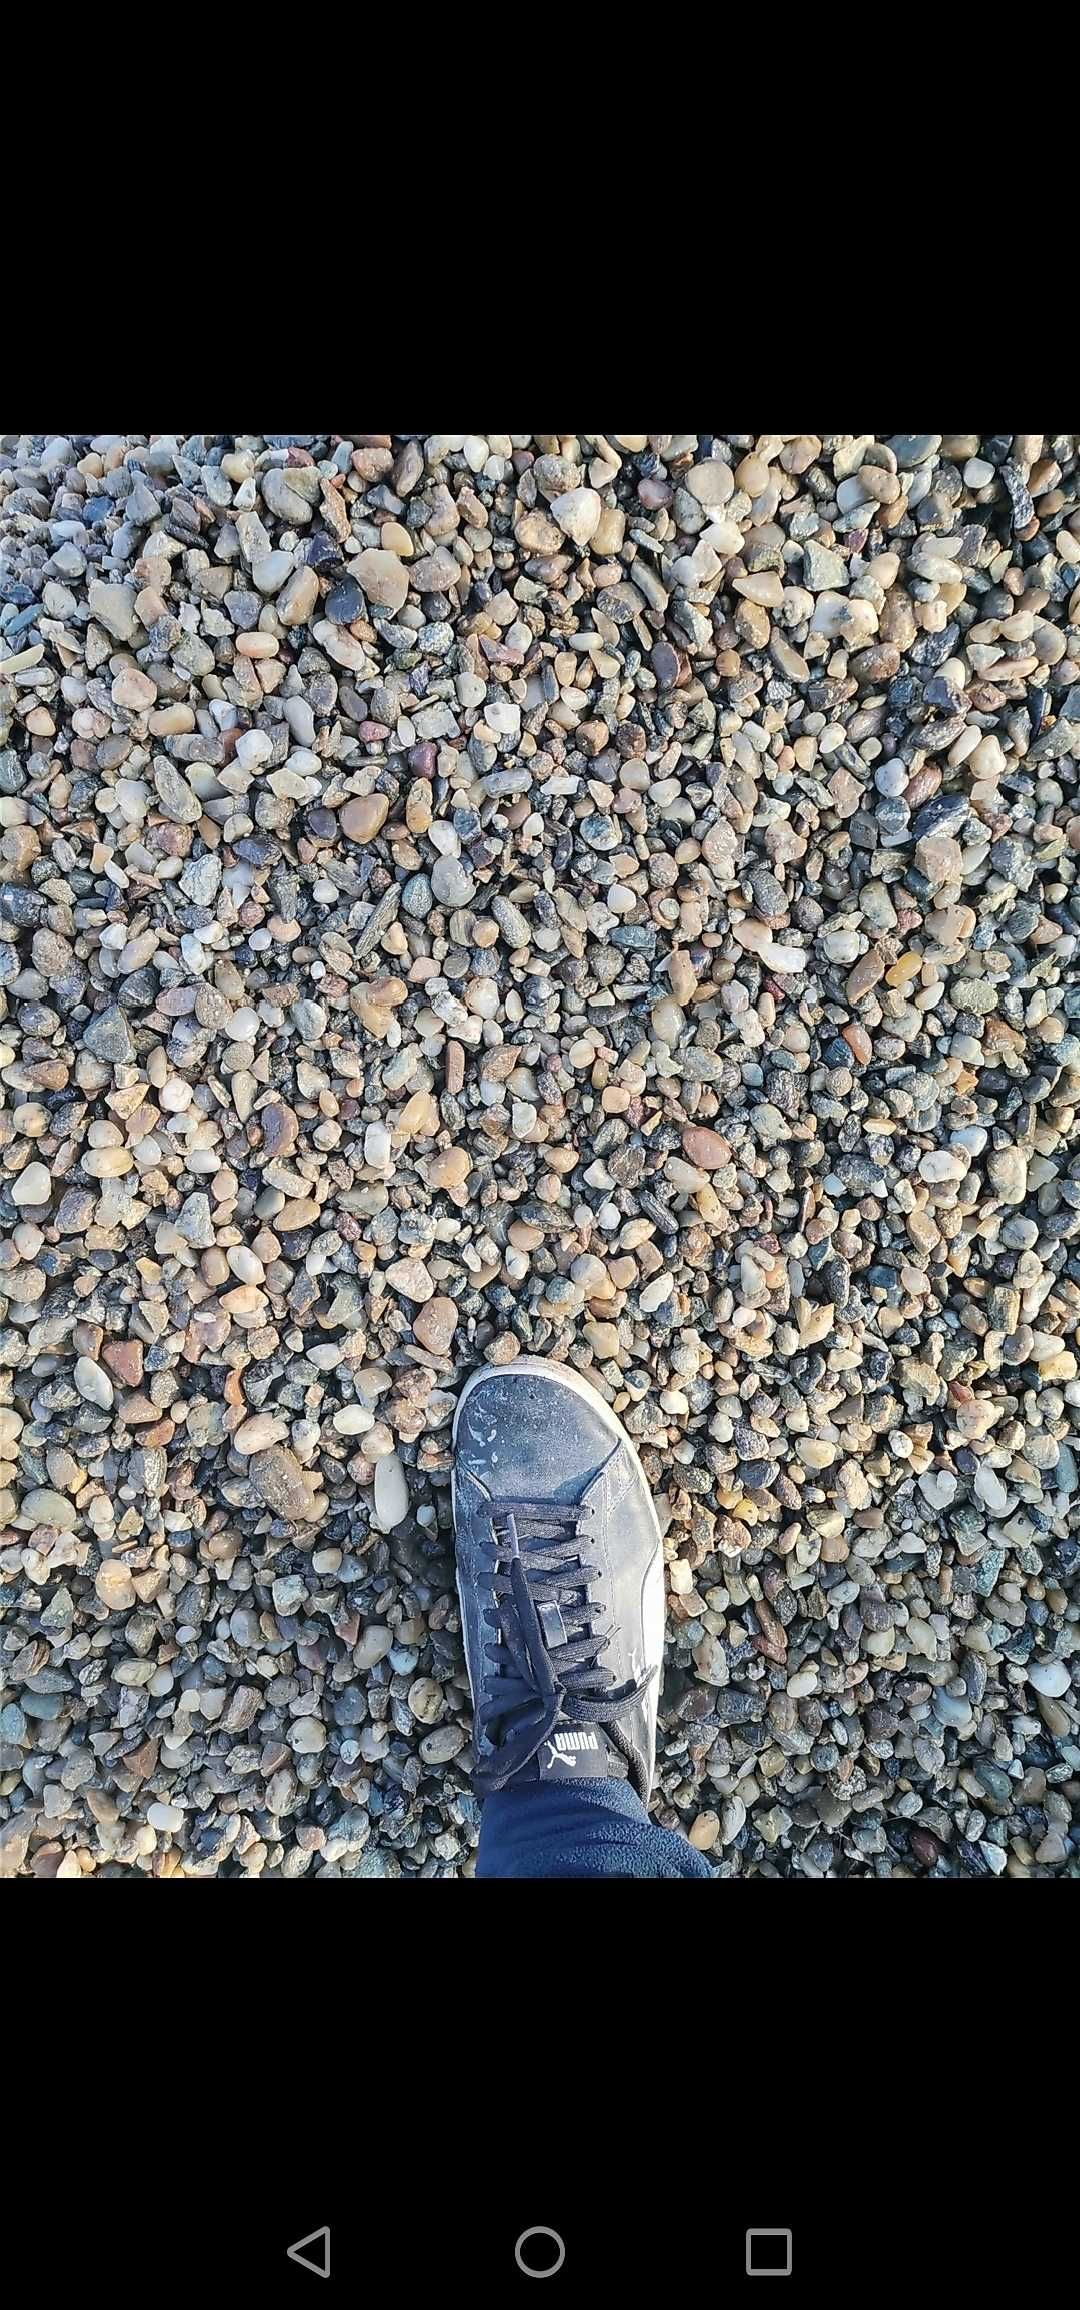 Nisip sort piatra concasata pământ galben nisipos negru vegetal moloz